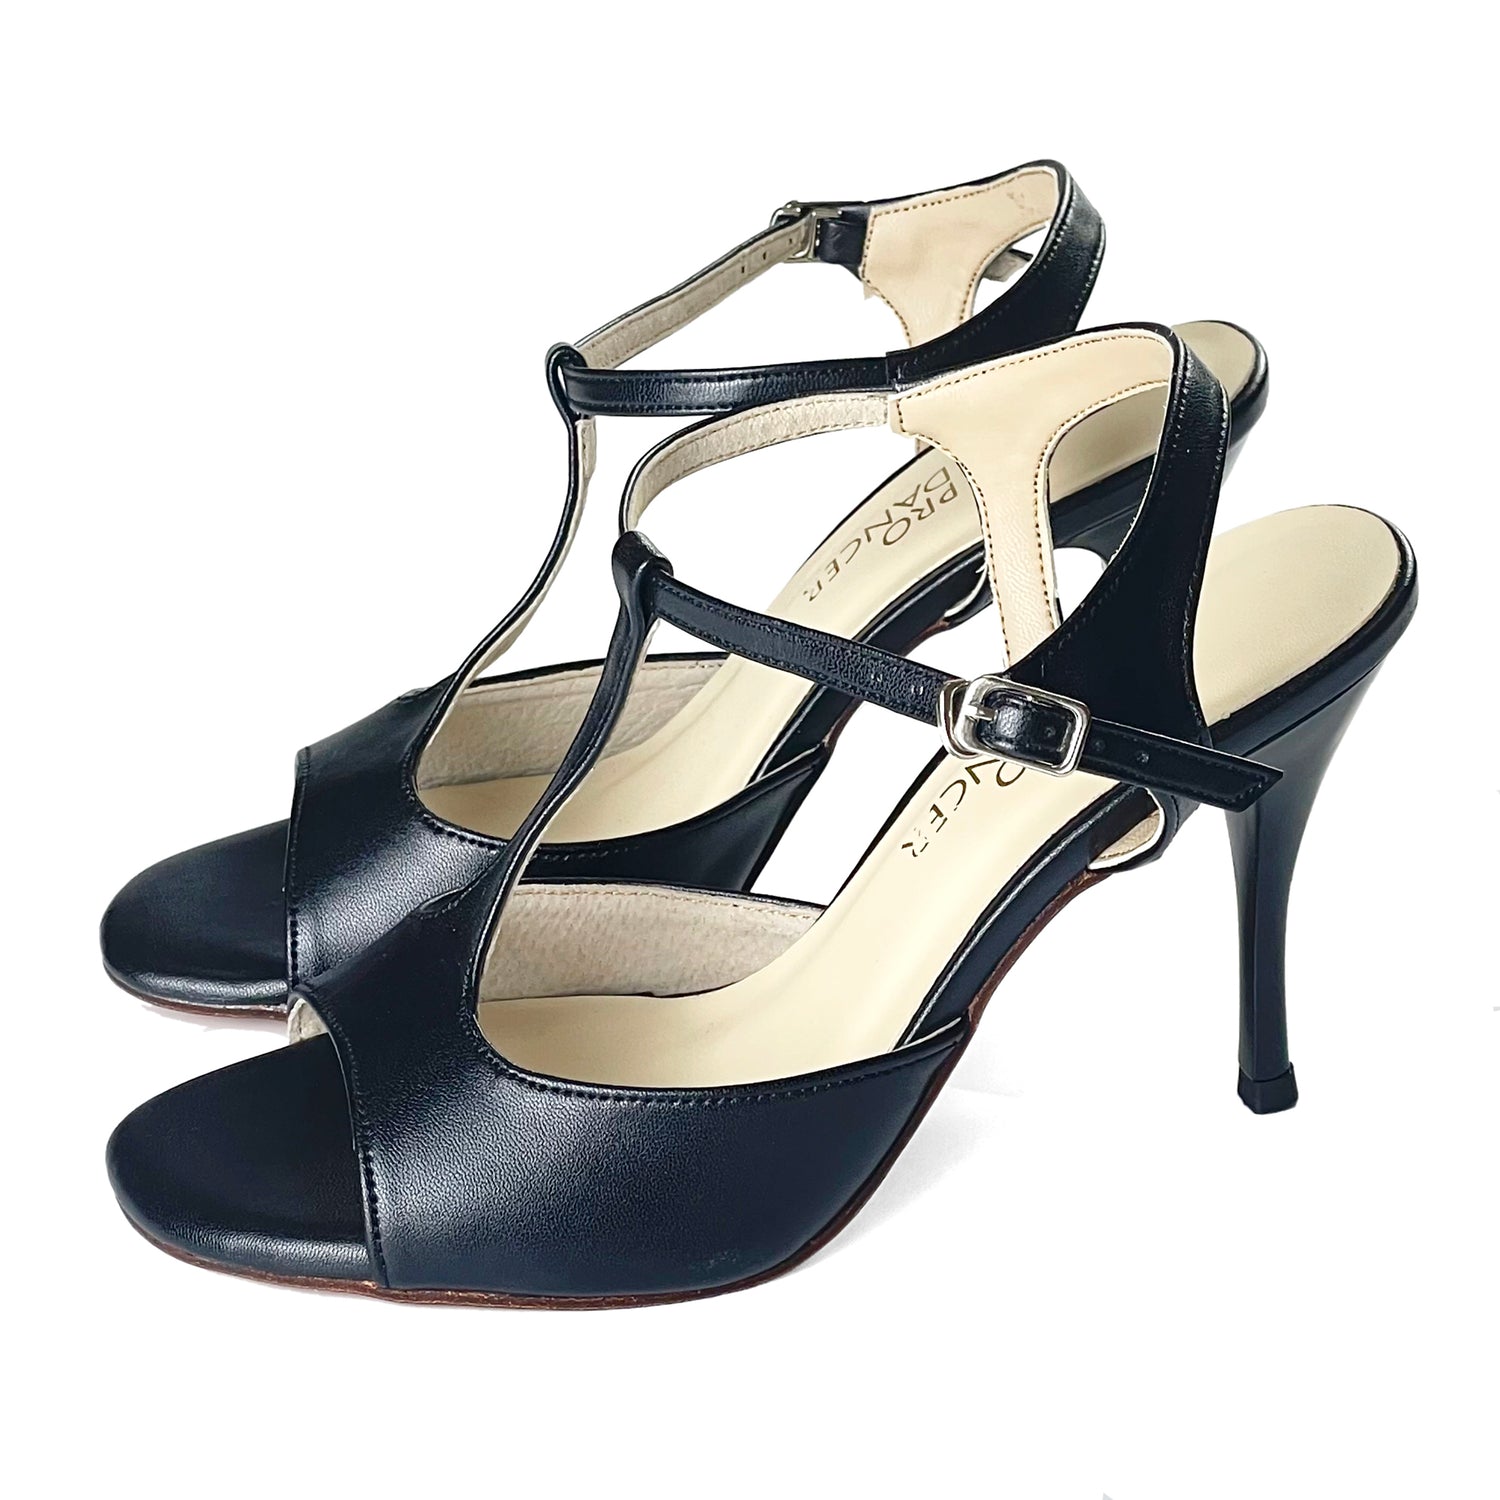 Pro Dancer Women's Tango Shoes high heel black leather sole dance sandals PD-9012D Argentina0